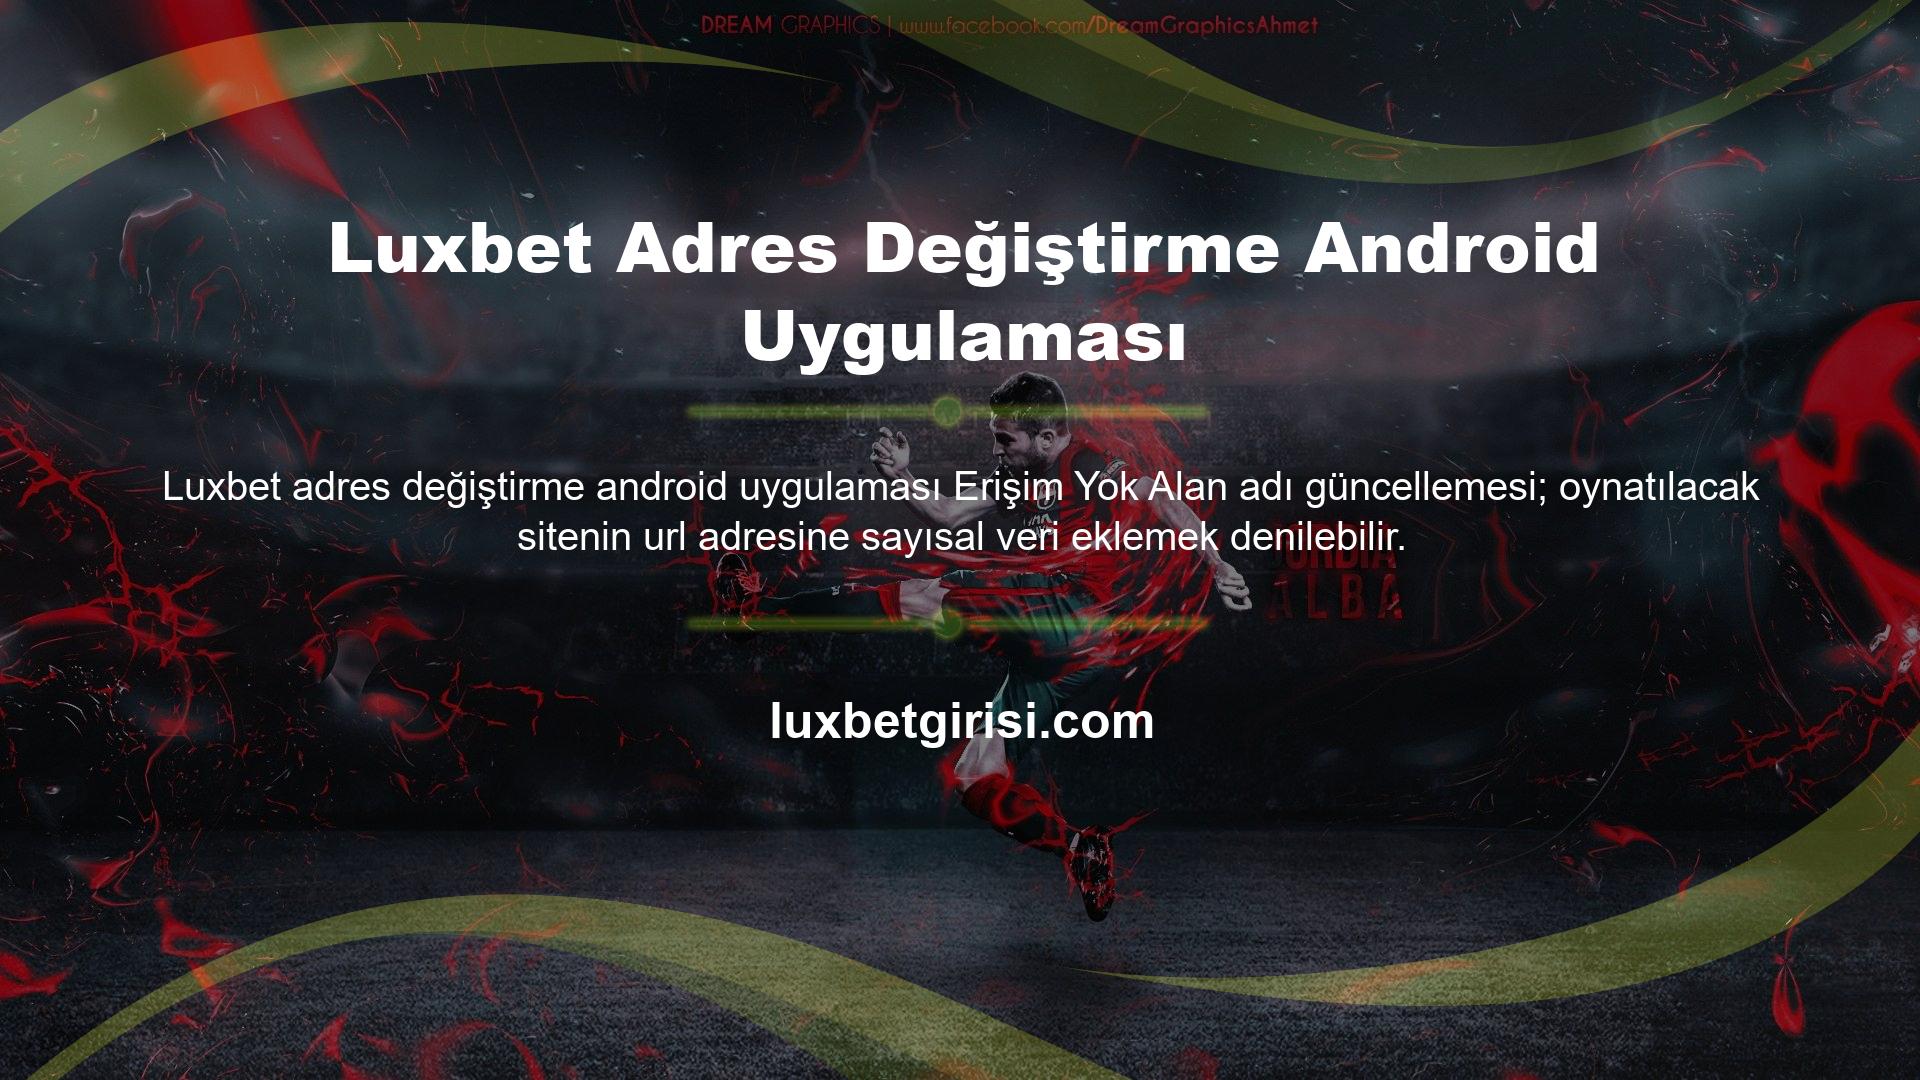 Luxbet Adres Değiştirme Android Uygulaması